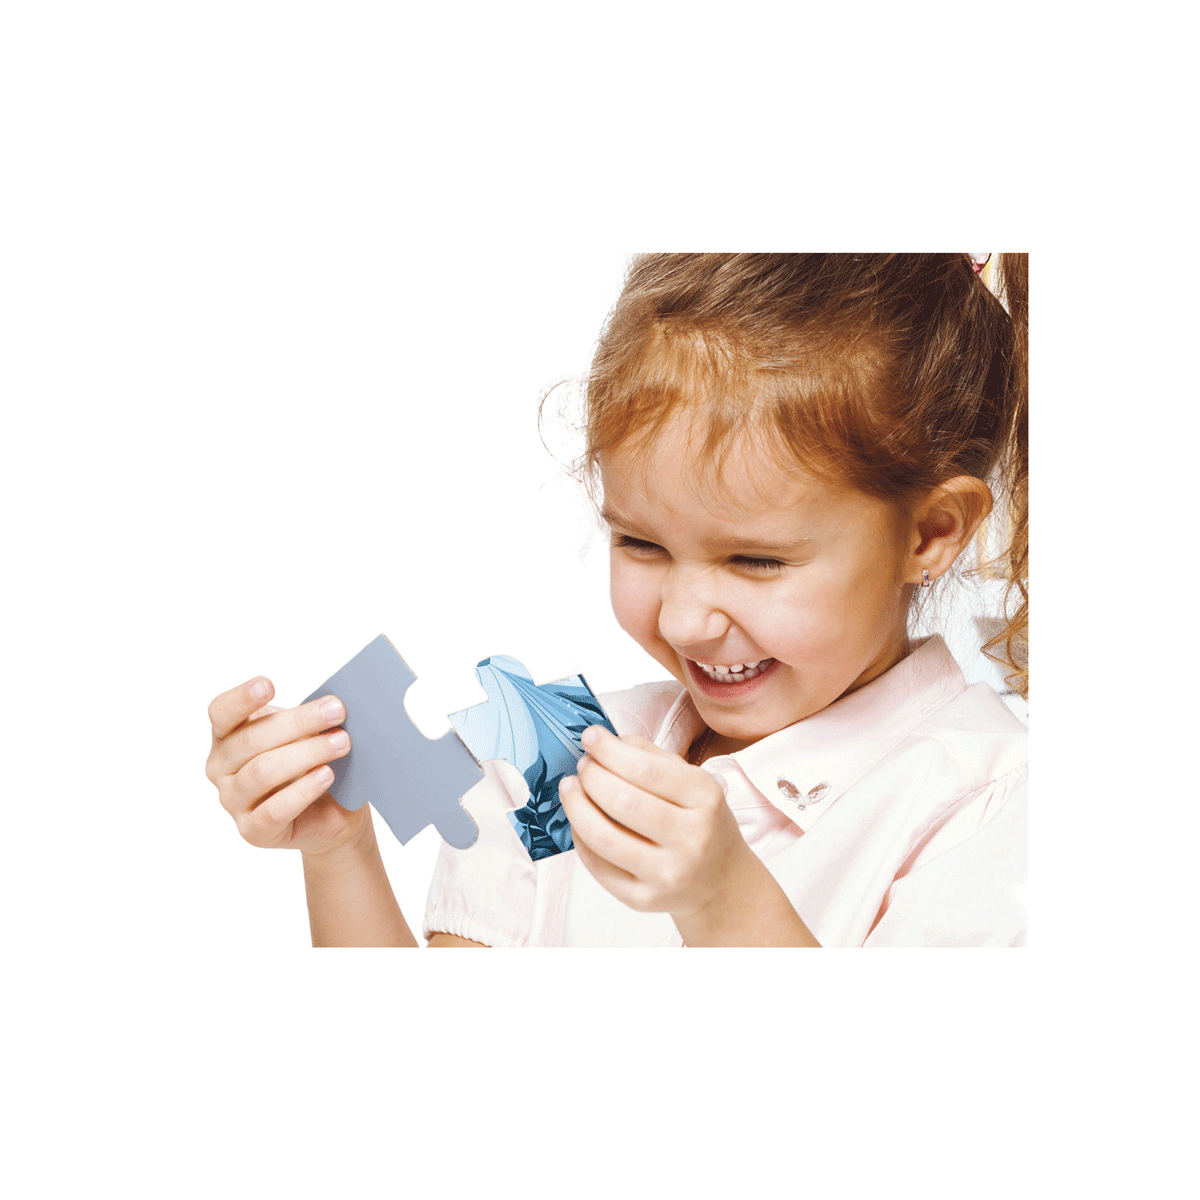 Clementoni supercolor puzzle disney encanto - 24 maxi pezzi, puzzle bambini 3 anni - CLEMENTONI, DISNEY PRINCESS, ENCANTO